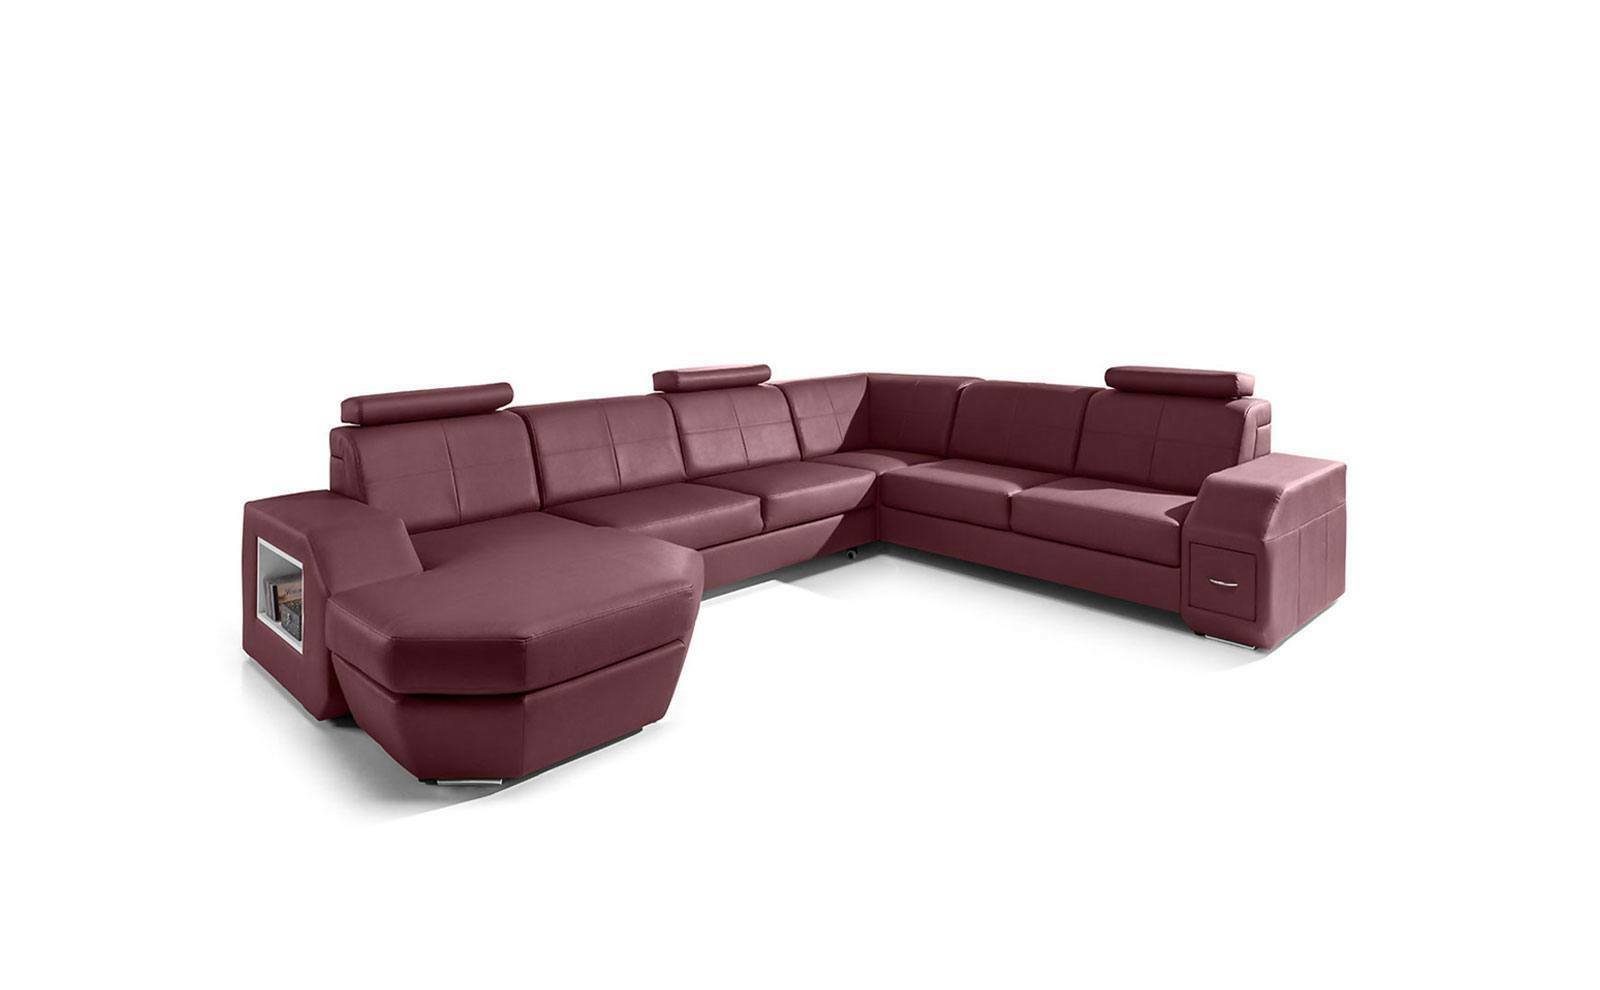 JVmoebel Ecksofa, Edle Design Sofas Couch Polster Eck Wohnlandschaft Couchen Garnitur